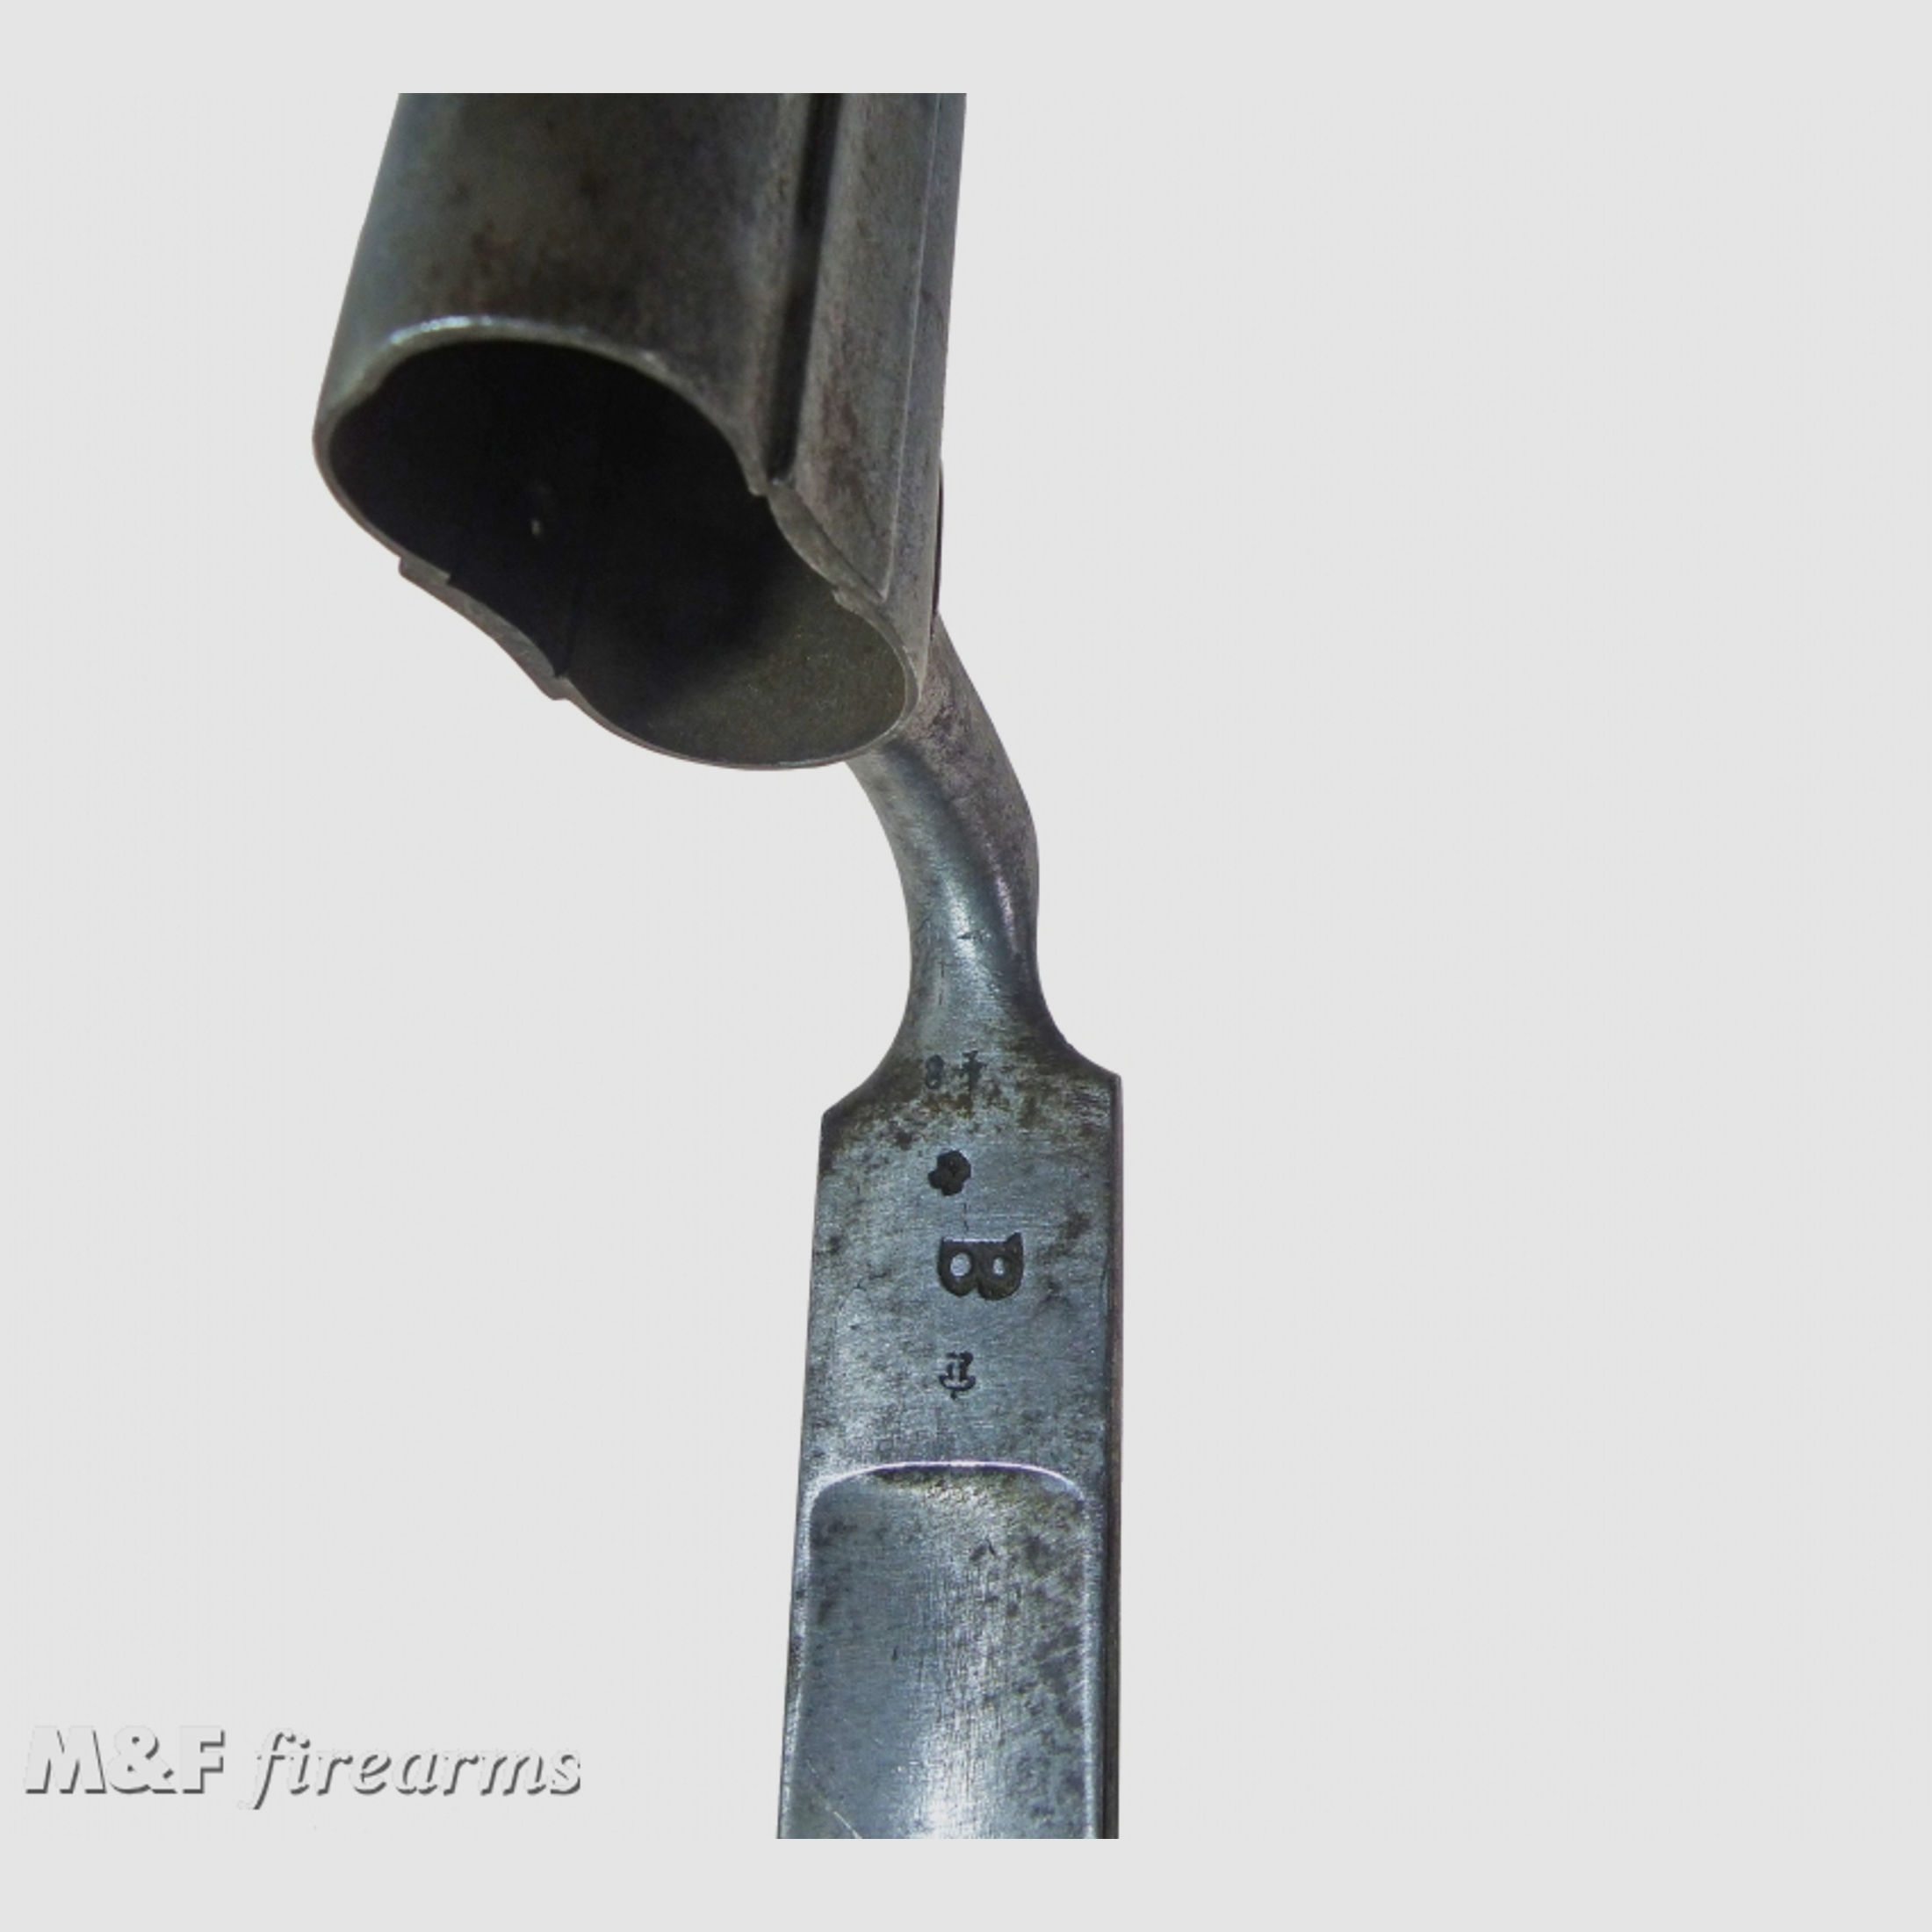 Seltenes Doppellauf Tüllen Bajonett (Dillenbajonett) für Schrotflinte (Querflinte) 19. Jahrhundert Hersteller unbekannt